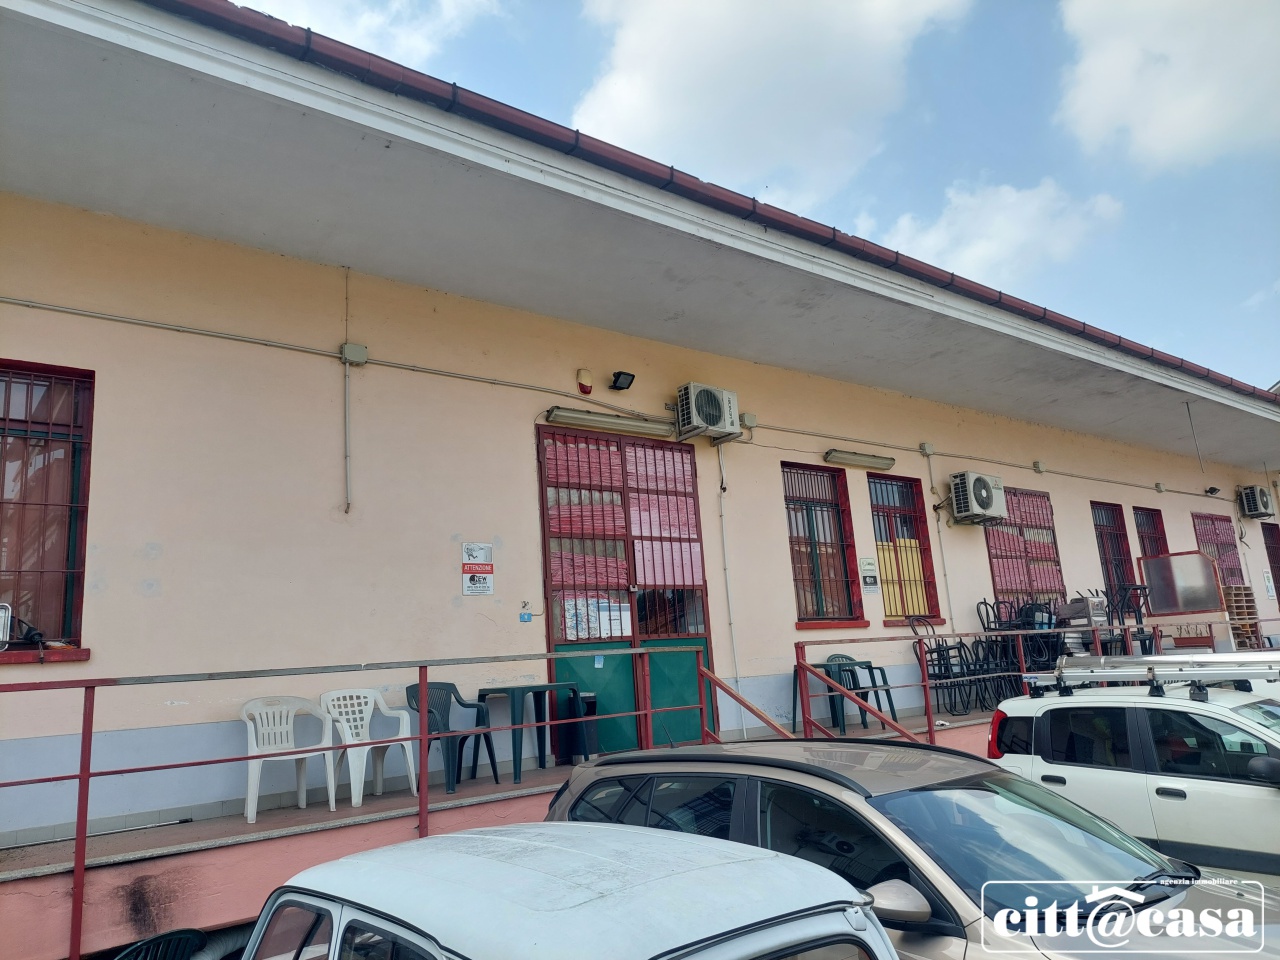 Locale commerciale in vendita in corso galileo ferraris, Chivasso